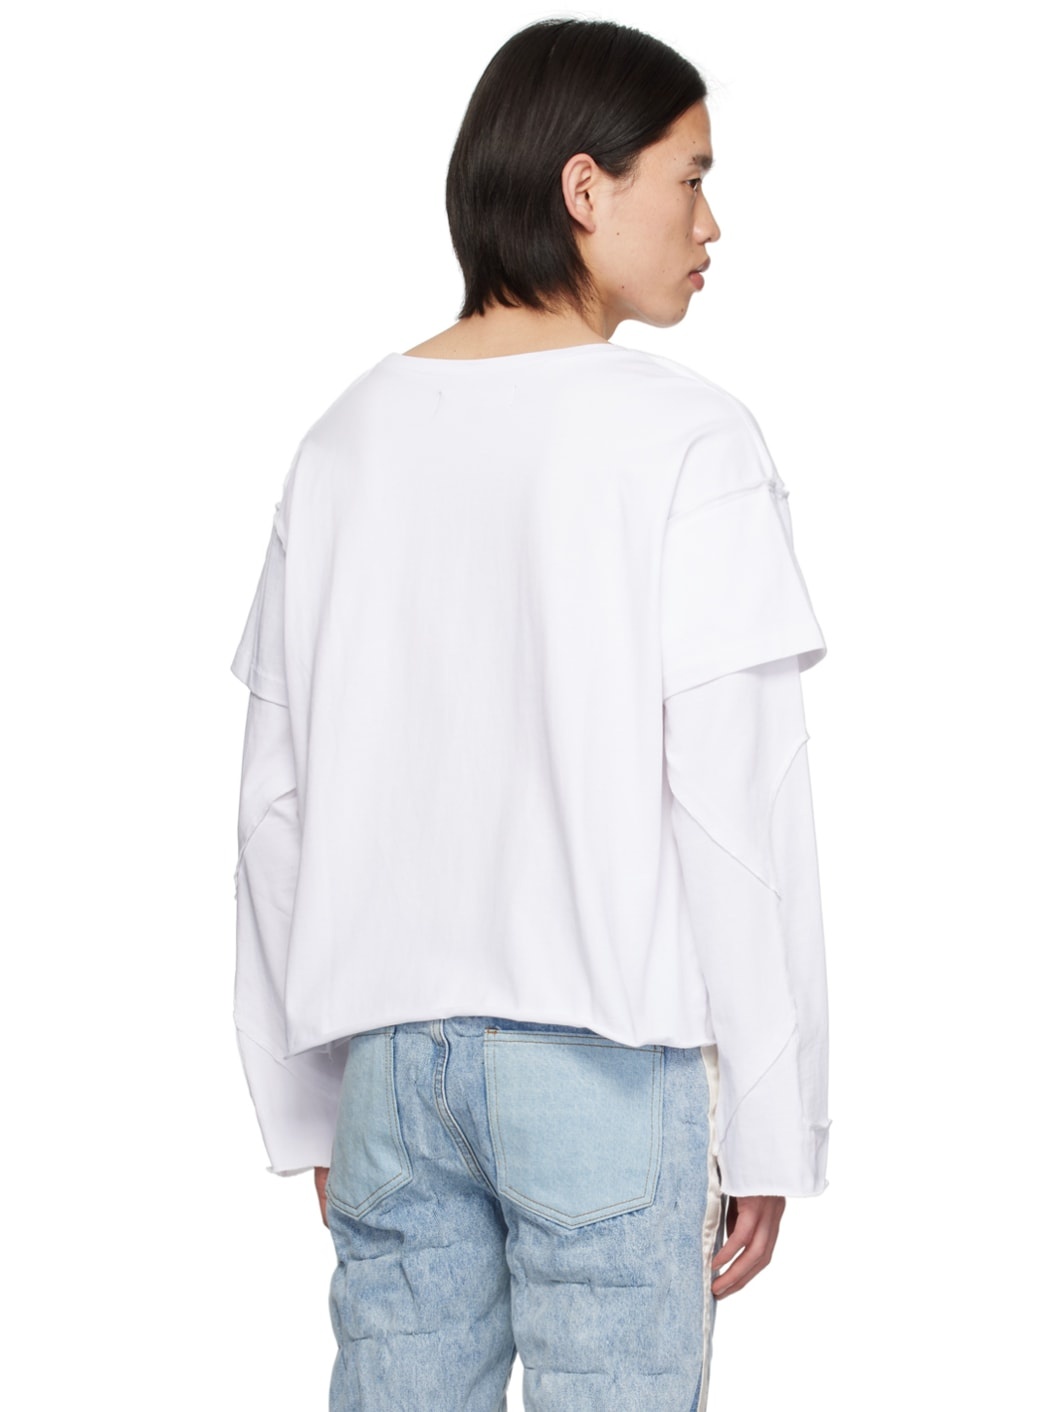 White Amalgamated Window Long Sleeve T-Shirt - 3